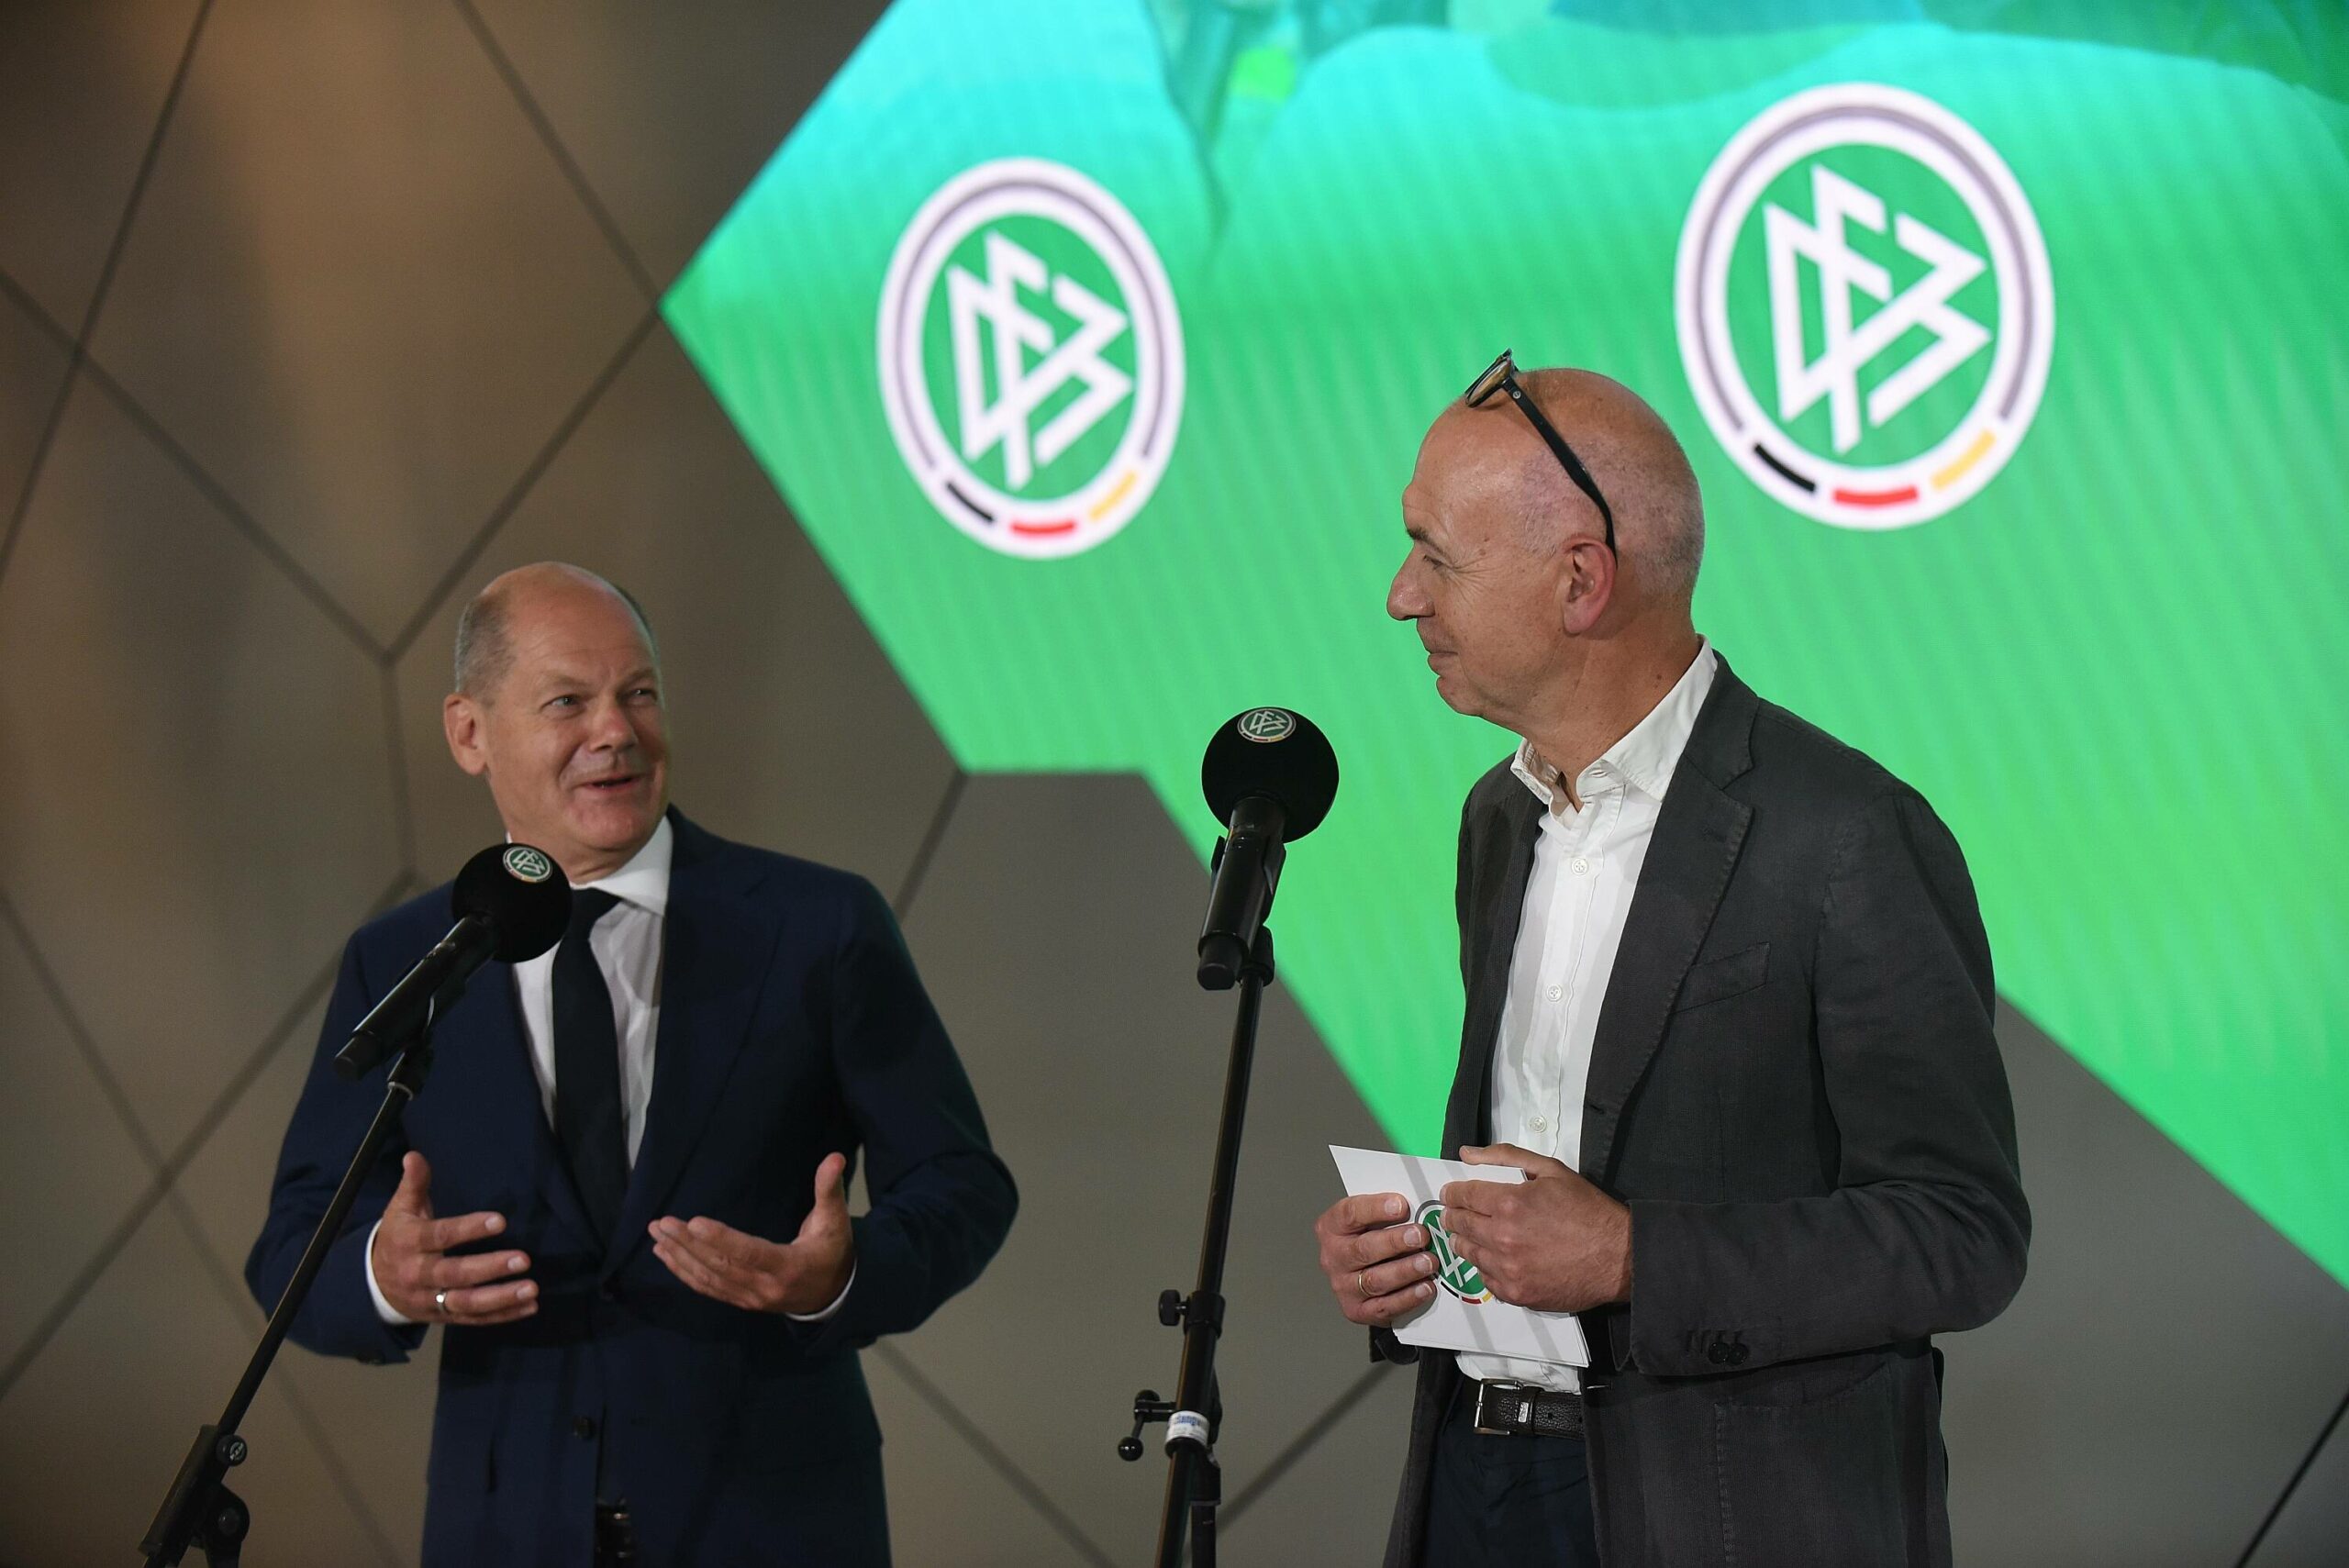 Bernd Neuendorf neben Olaf Scholz als er den DFB-Campus besucht